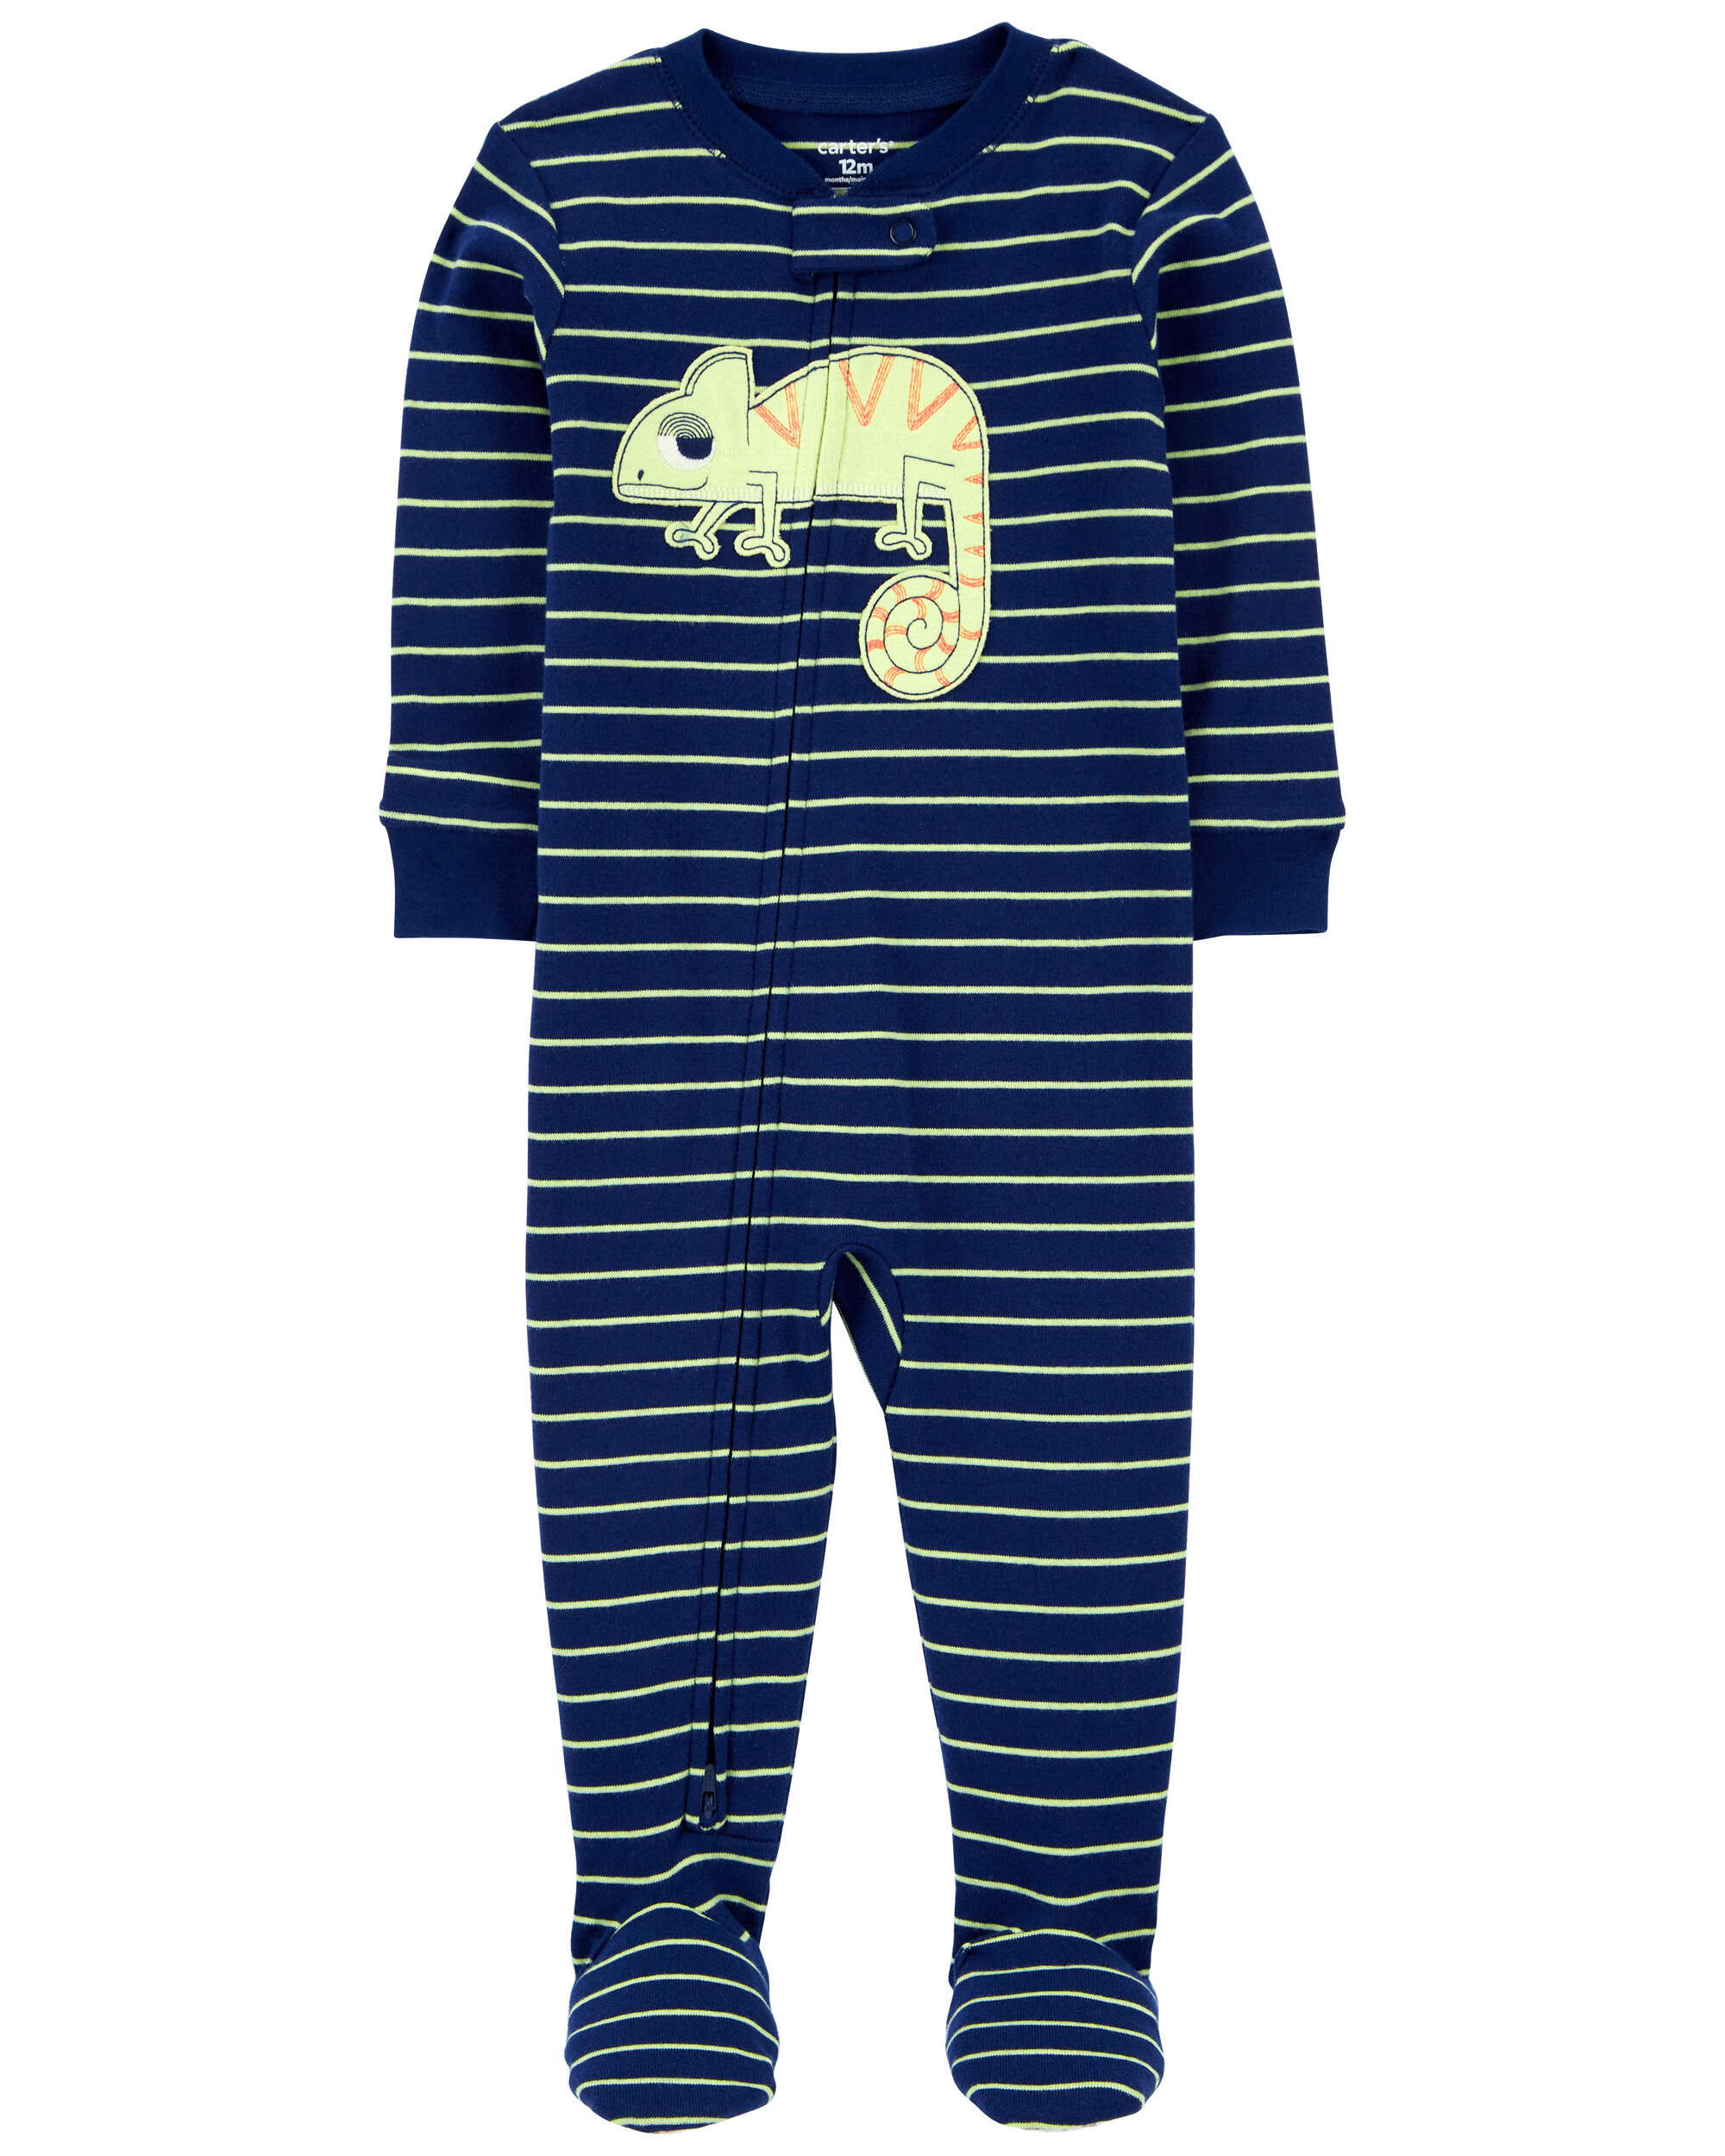 1-Piece Chameleon 100% Snug Fit Cotton Footie Pyjamas